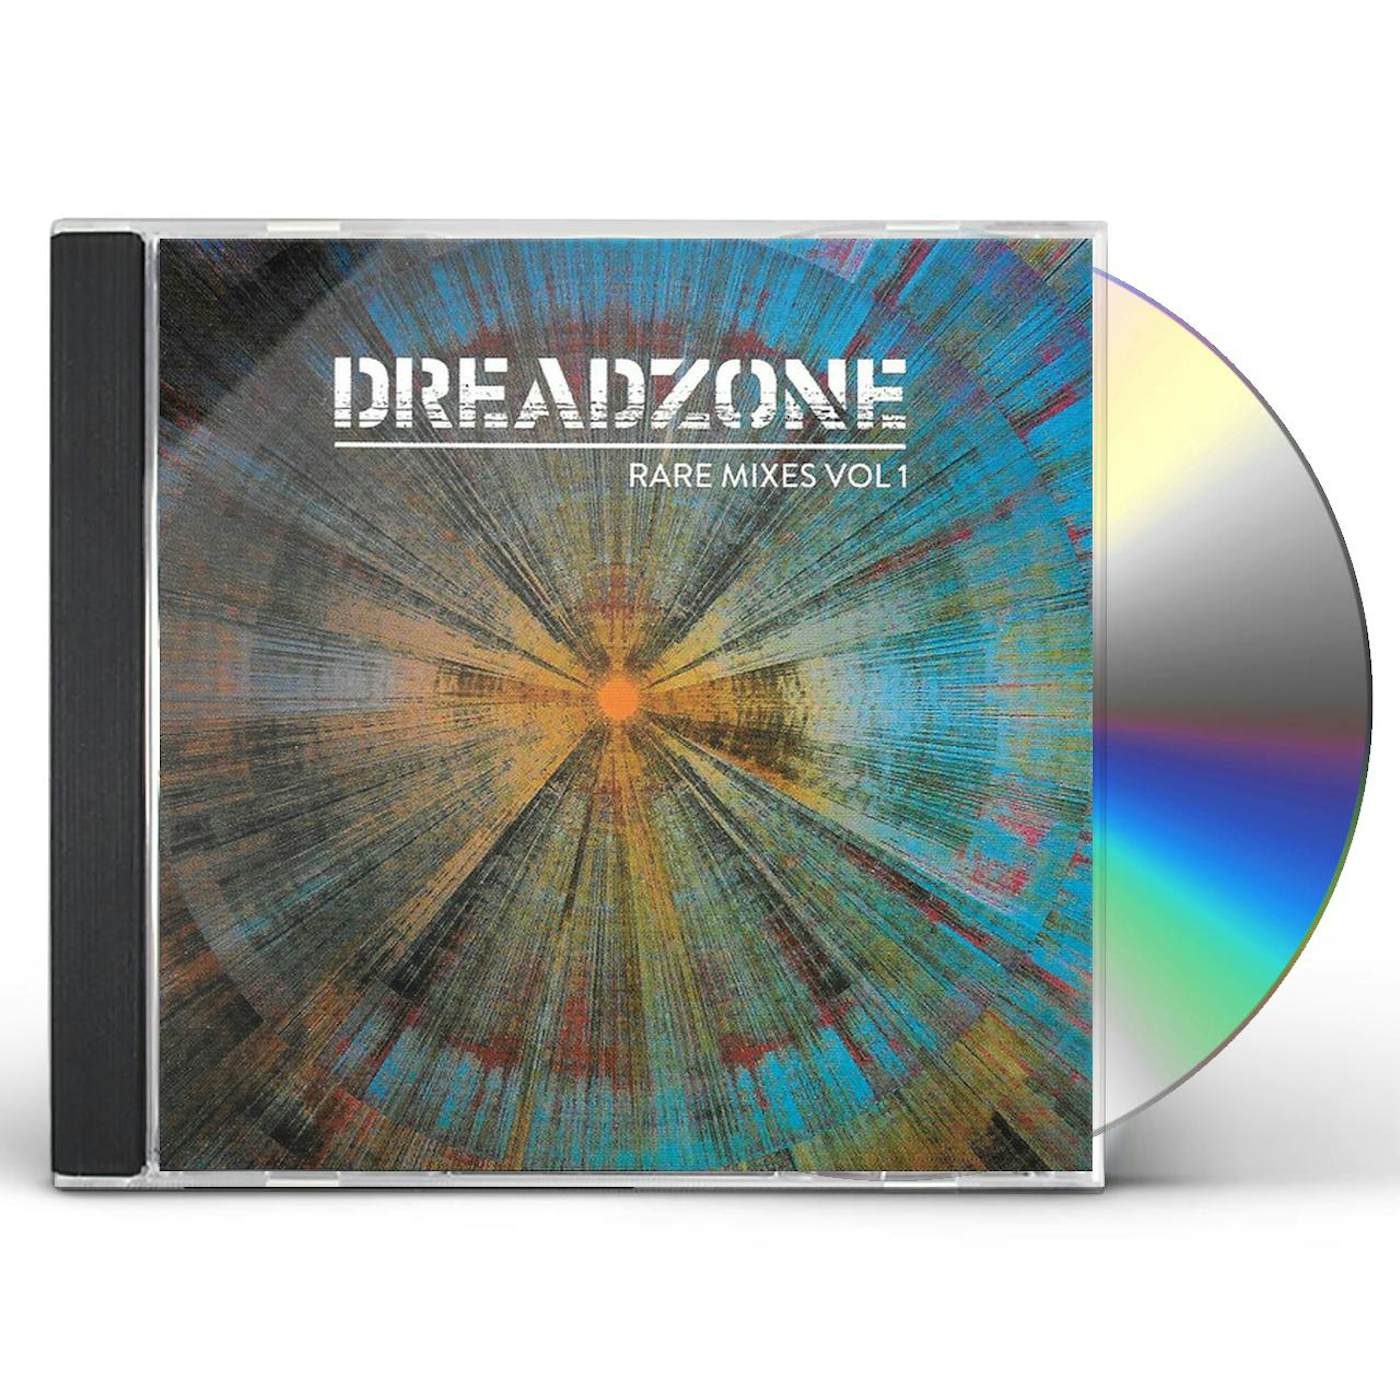 Dreadzone RARE MIXES VOL 1 CD